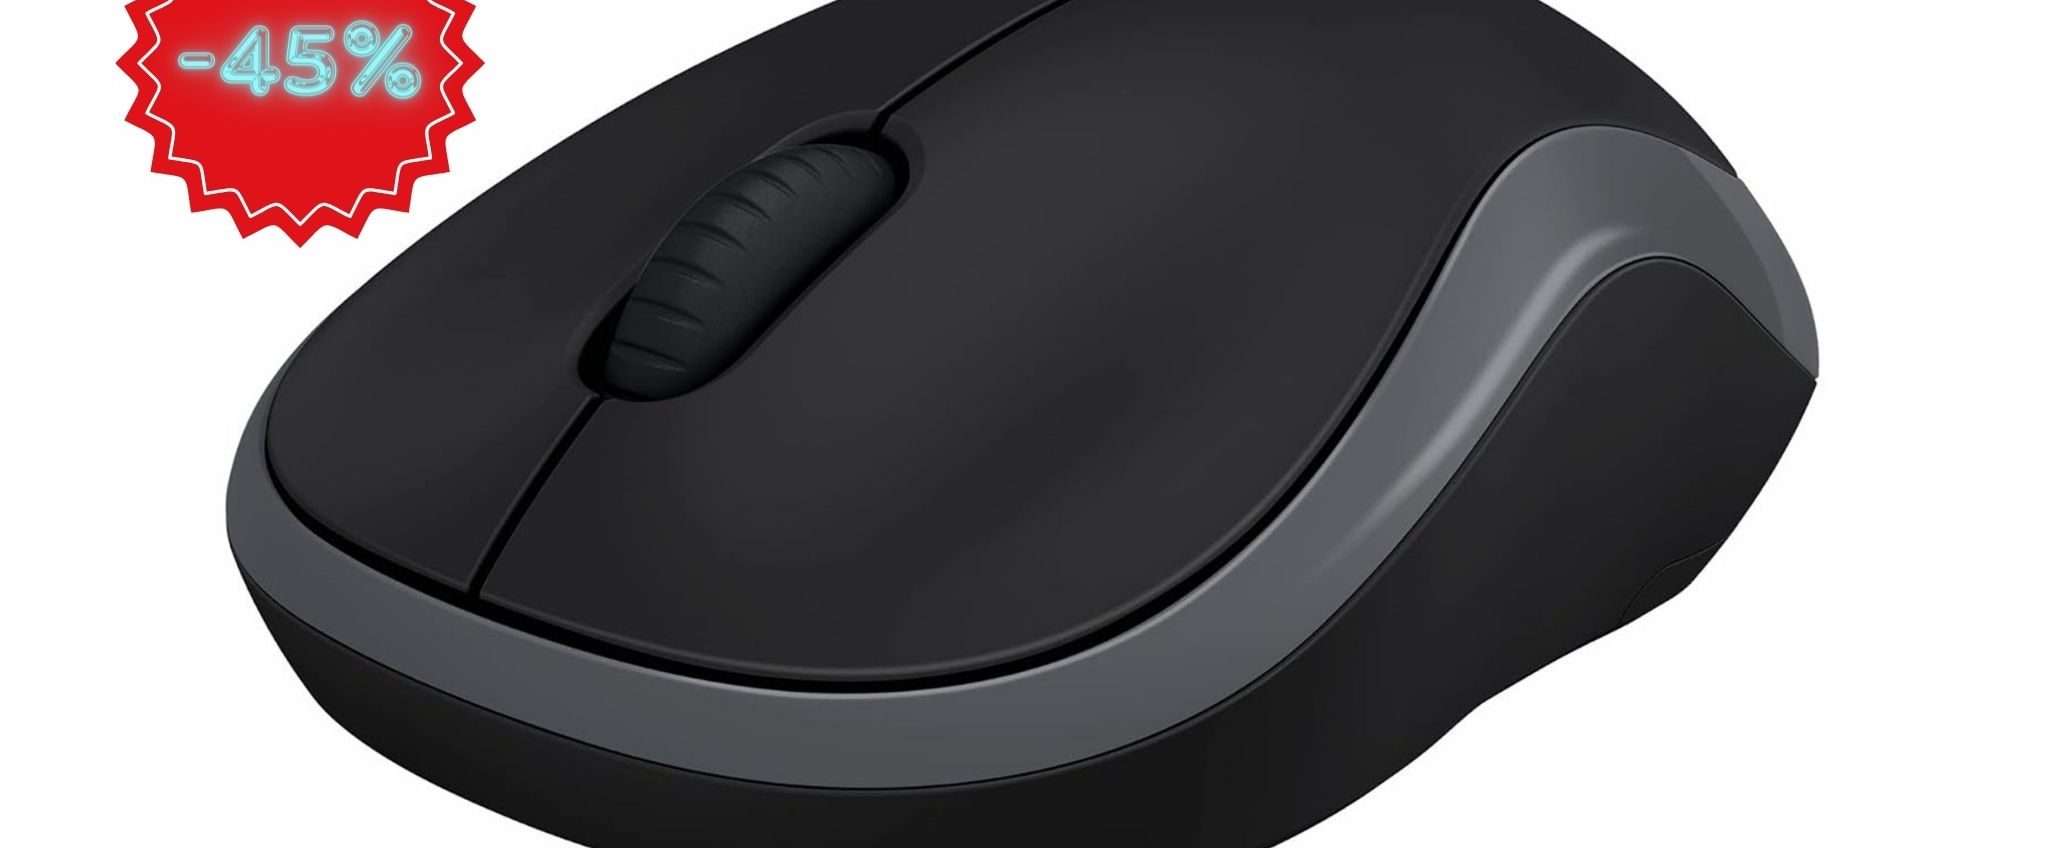 Mouse Wireless Logitech M185 a soli 9€? Affarone di Amazon!